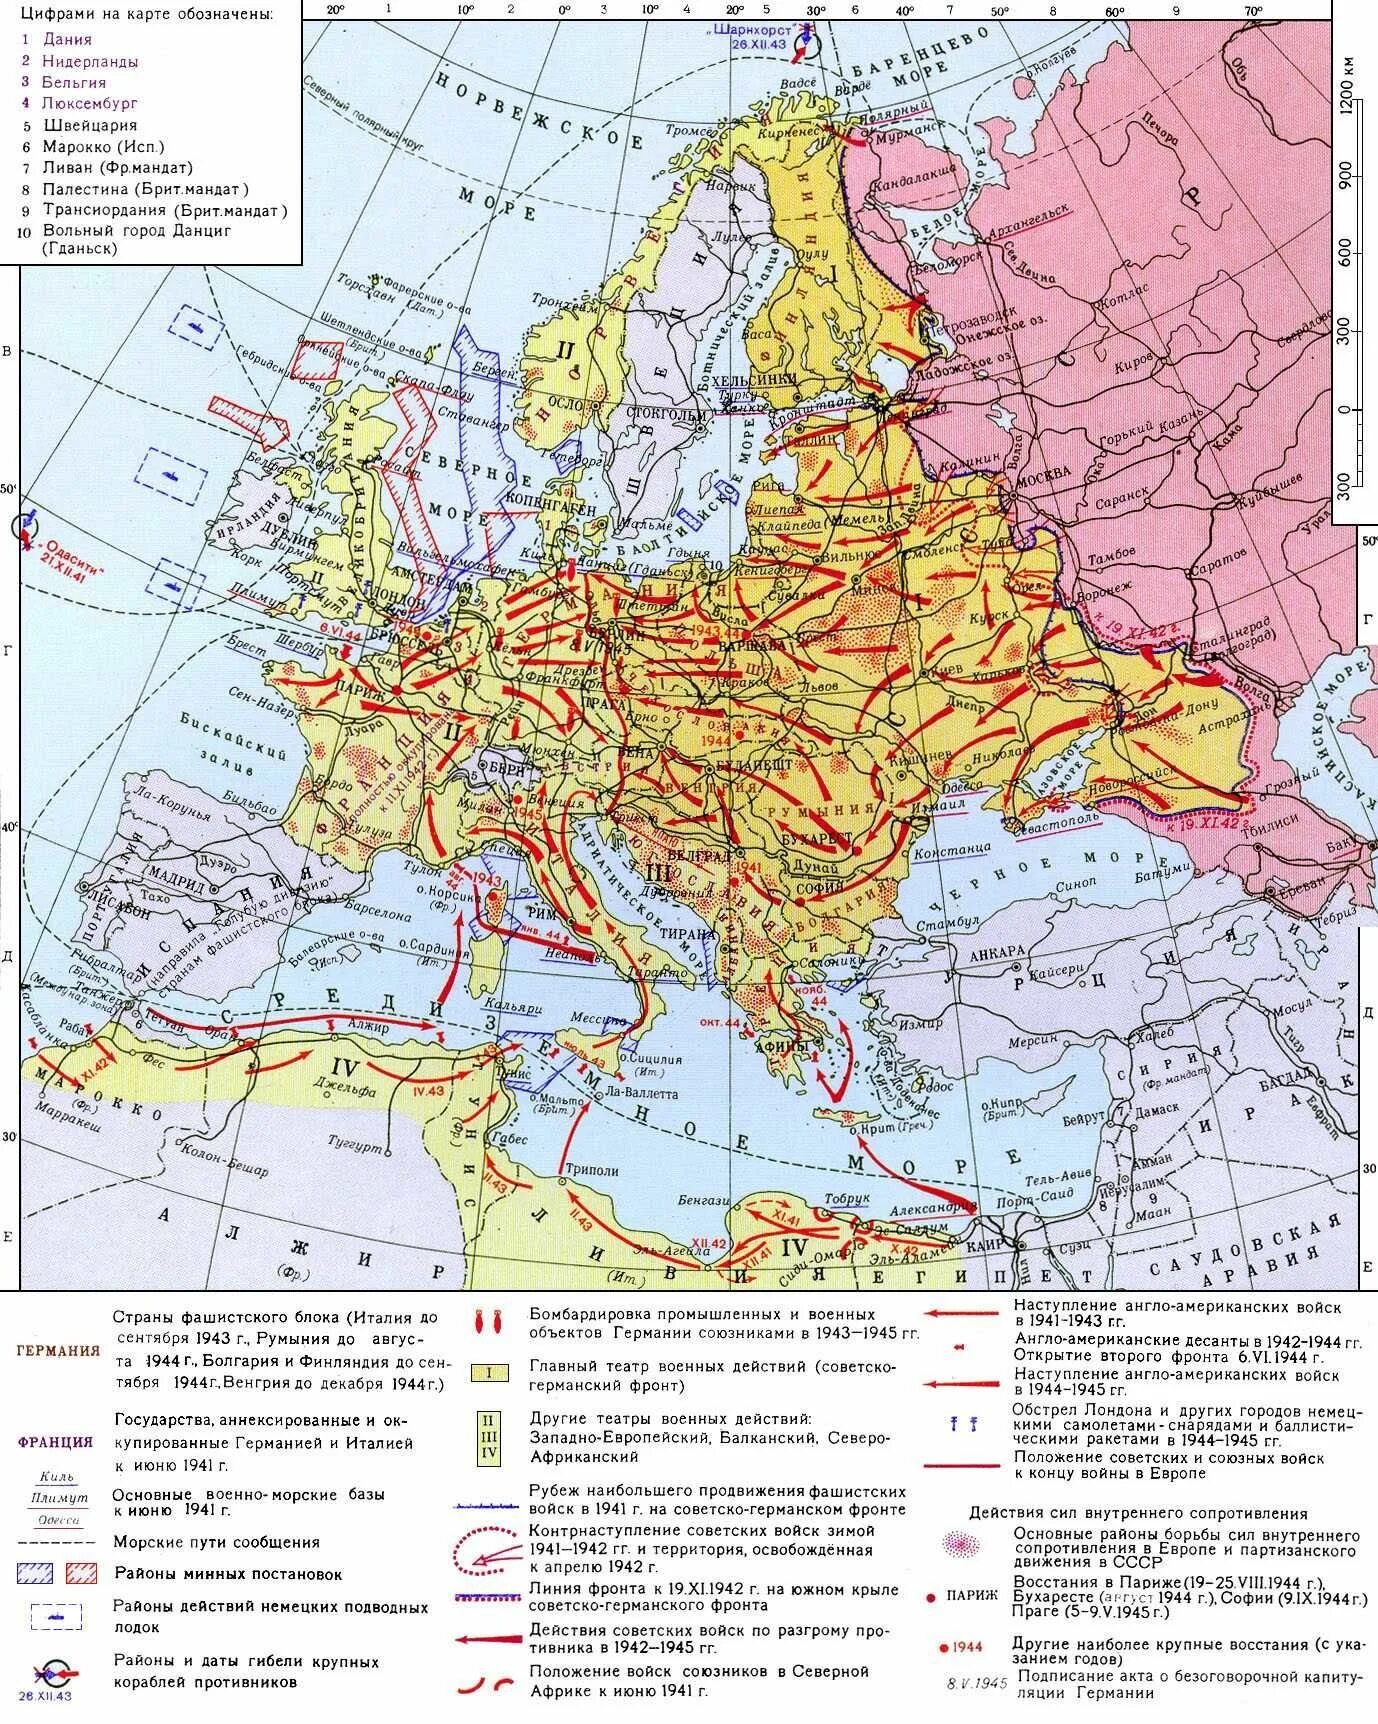 Карта второй мировой войны 1939-1945.